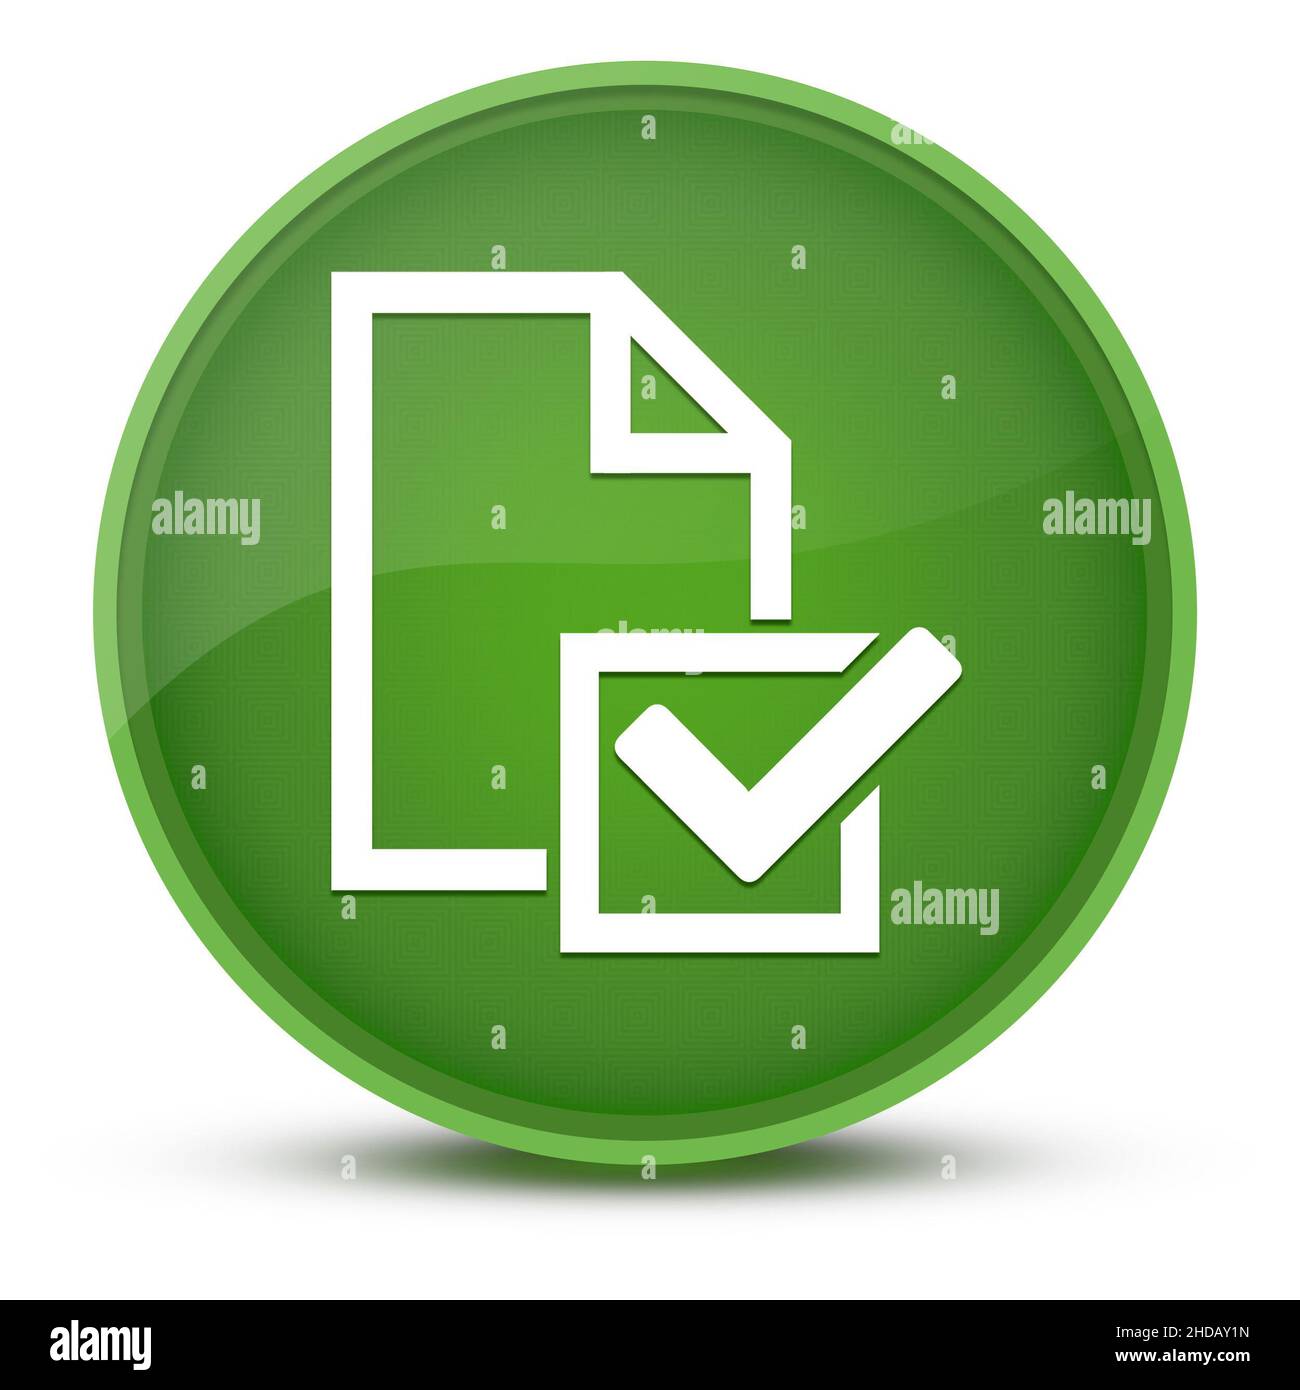 Survey (icona elenco di controllo) immagine astratta con pulsante rotondo verde lucido Foto Stock